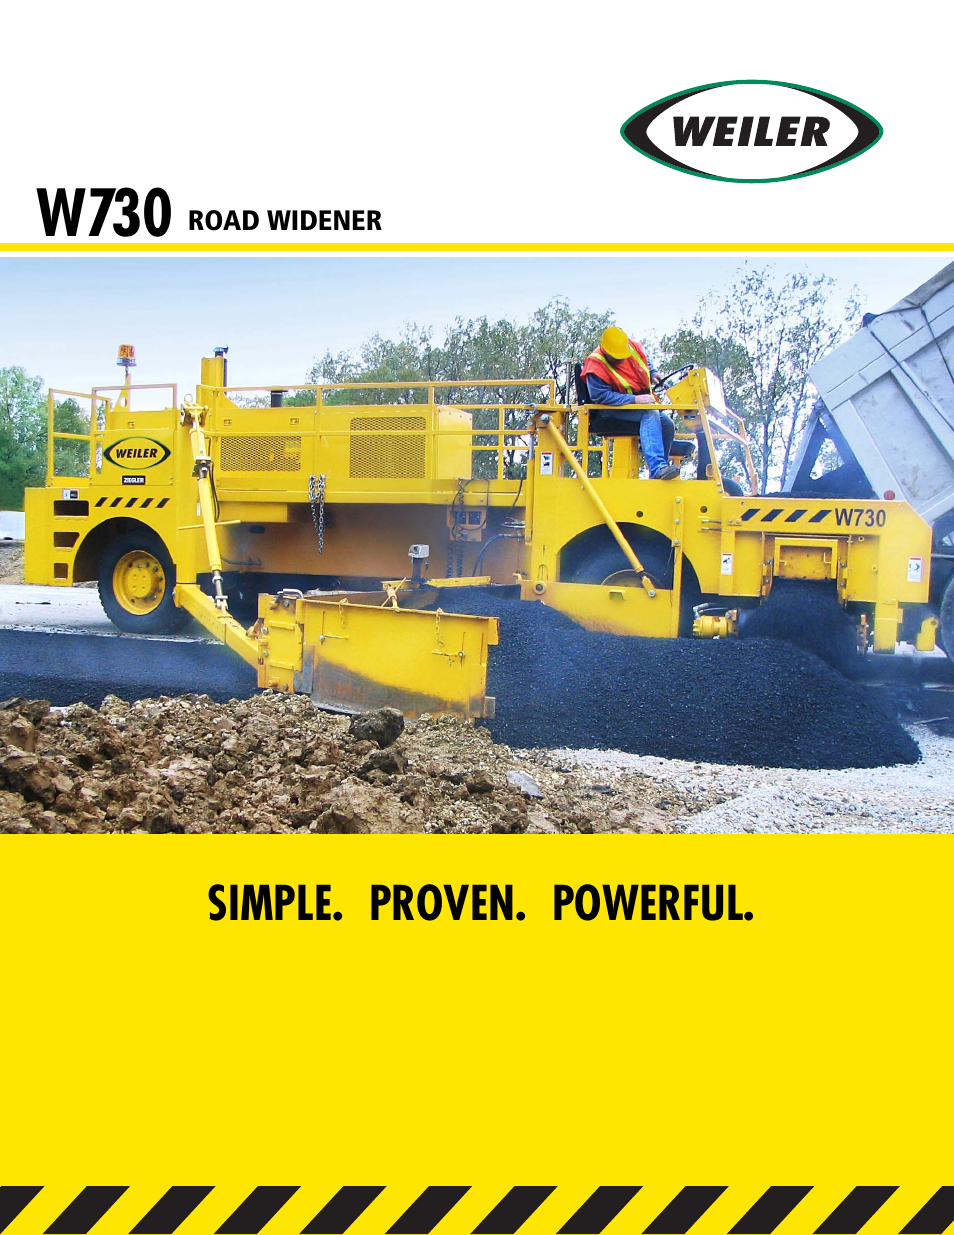 Weiler W730